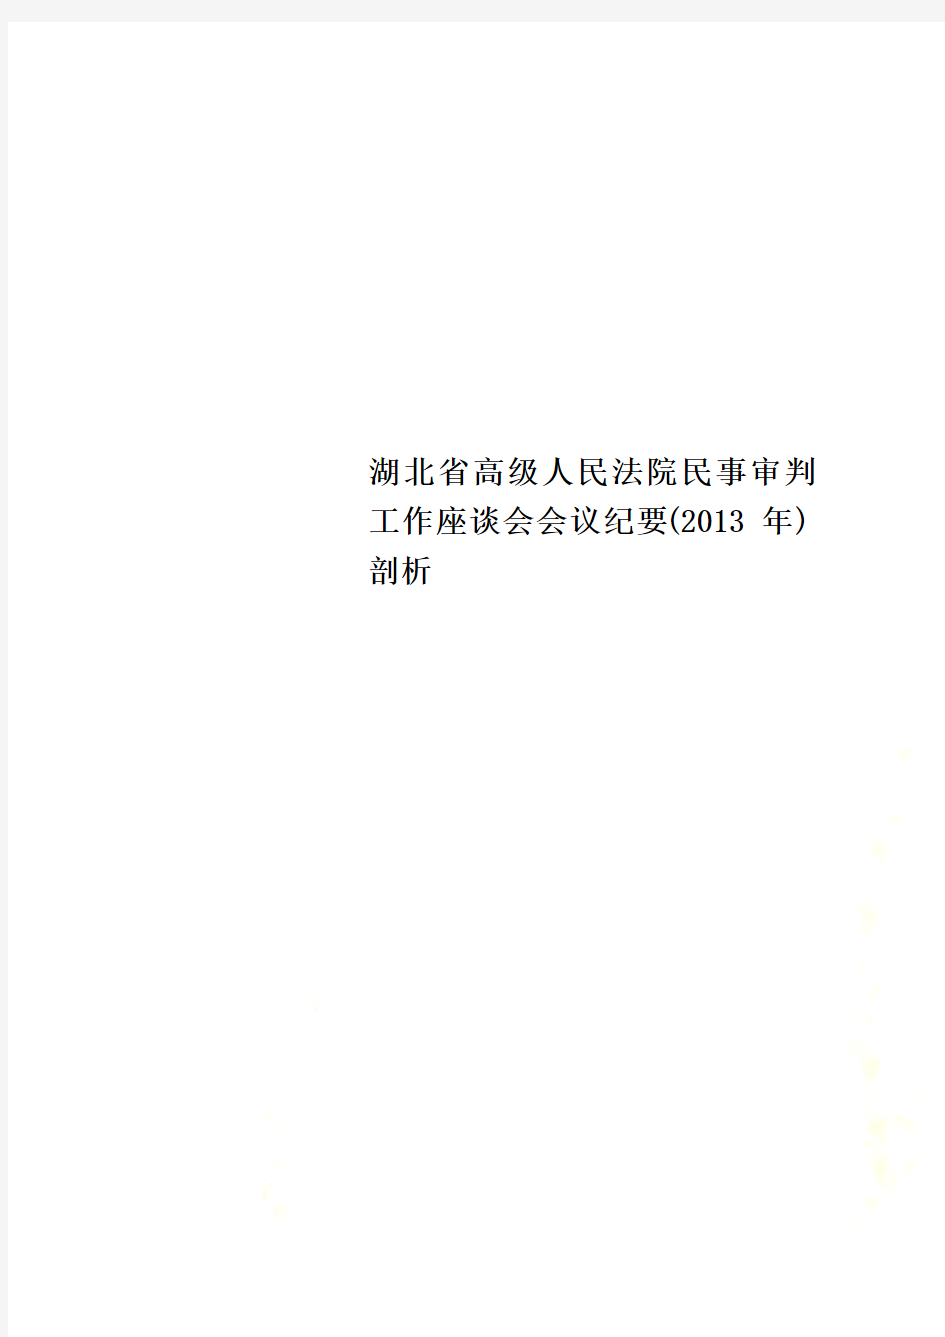 湖北省高级人民法院民事审判工作座谈会会议纪要(2013年)剖析